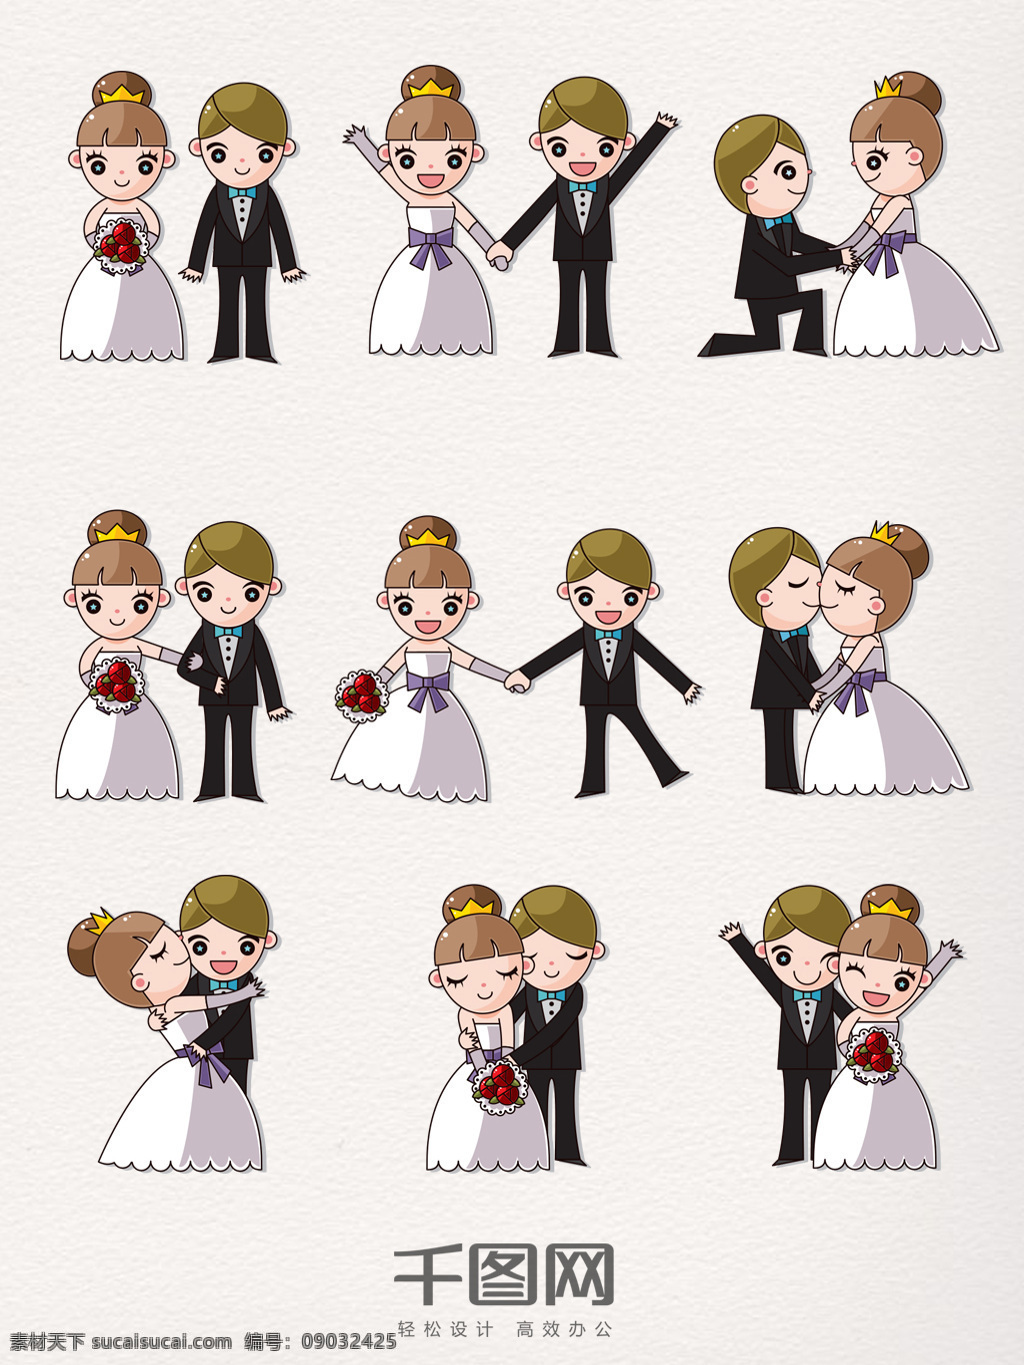 组 卡通 婚礼 装饰 图案 手绘 新郎 新娘 结婚 玫瑰 插画